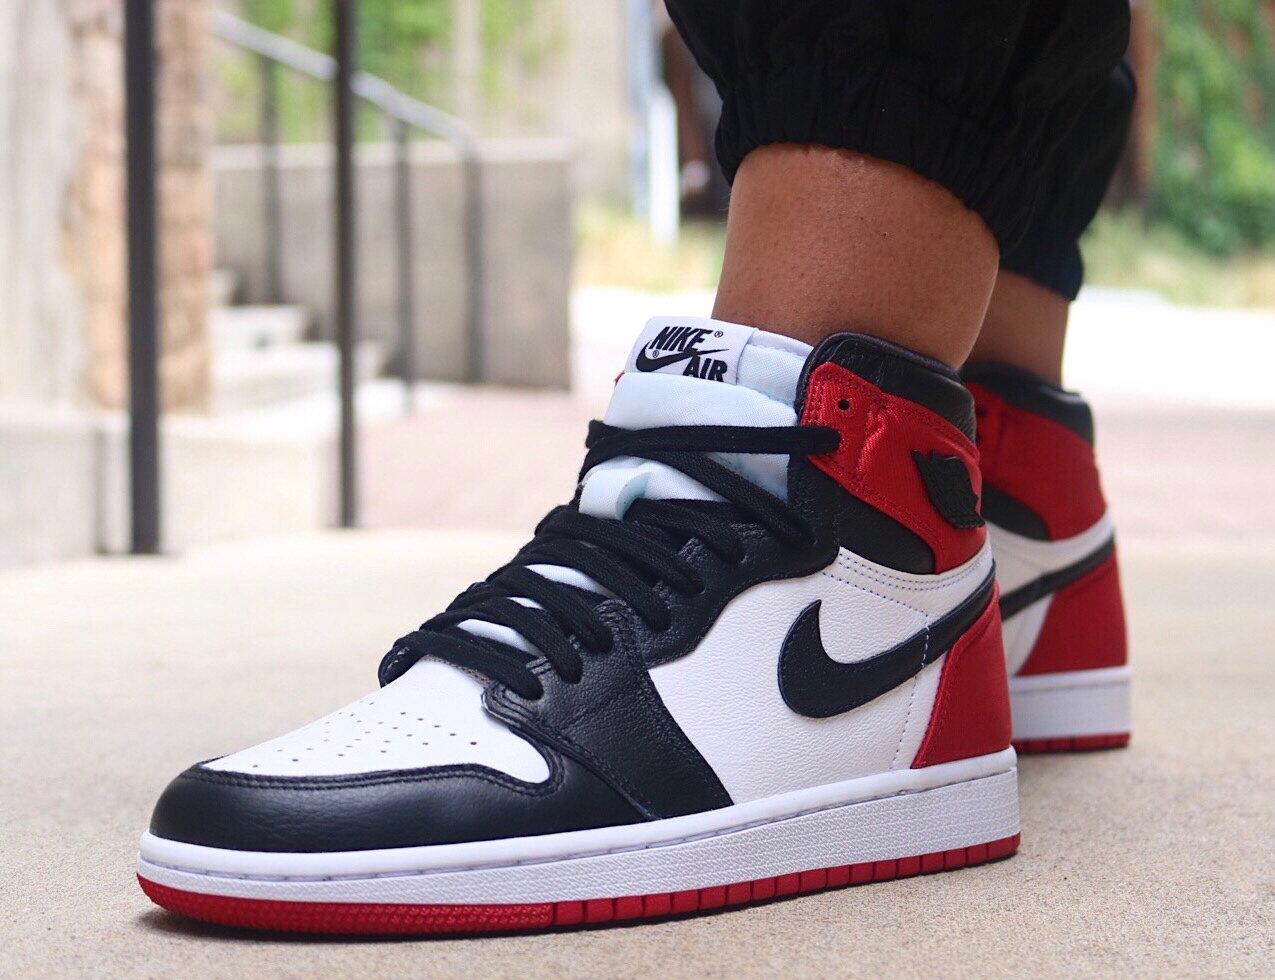 Tænke moronic Scan Sneaker Release : Womens Air Jordan 1 Retro High OG “Satin Black Toe”